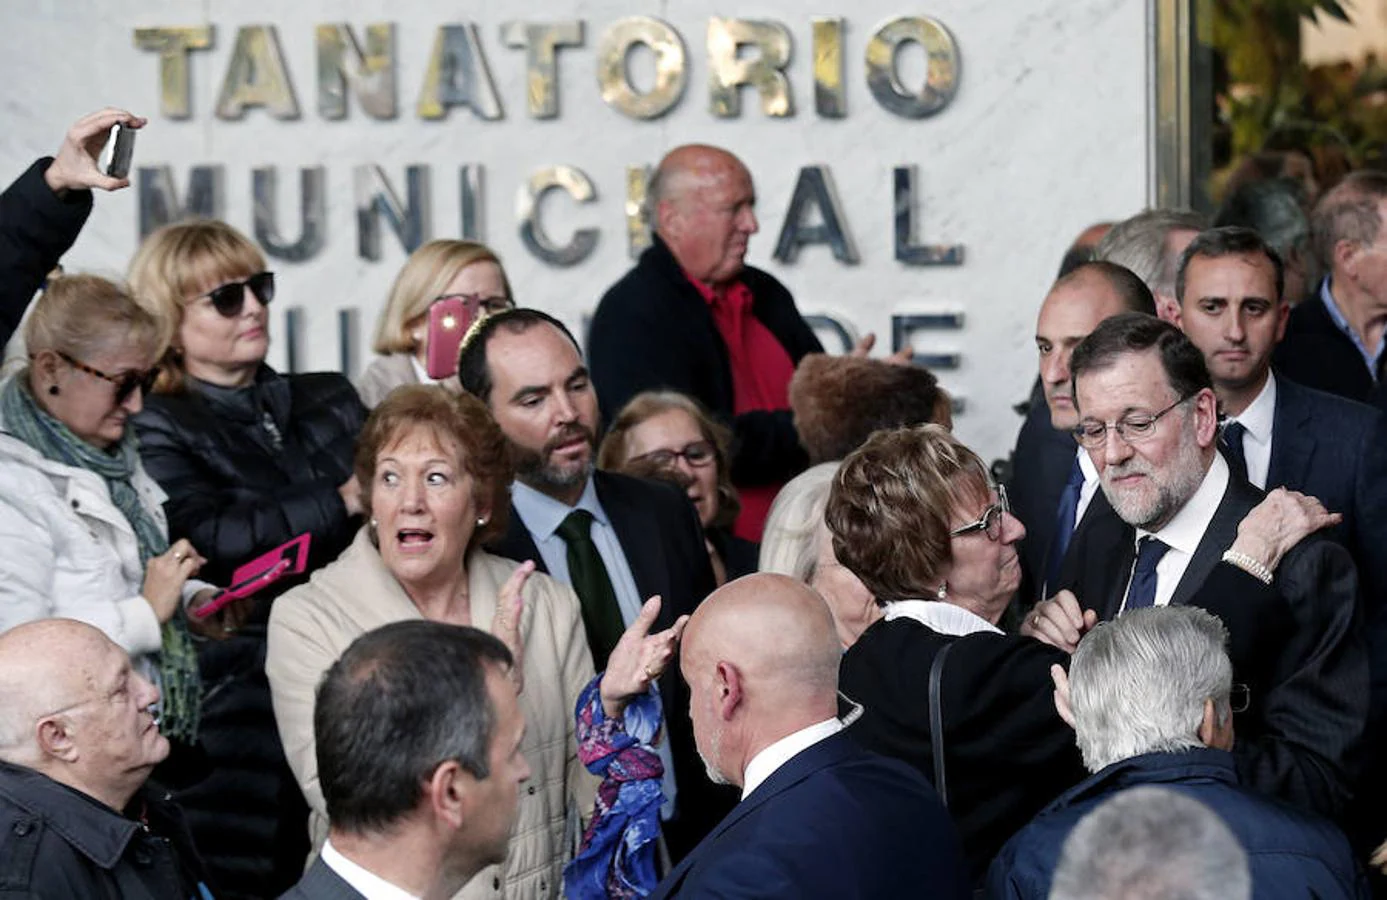 El presidente del Gobierno, Mariano Rajoy, sale del Tanatorio Municipal de Valencia, tras la misa celebrada en memoria de Rita Barberá. Efe